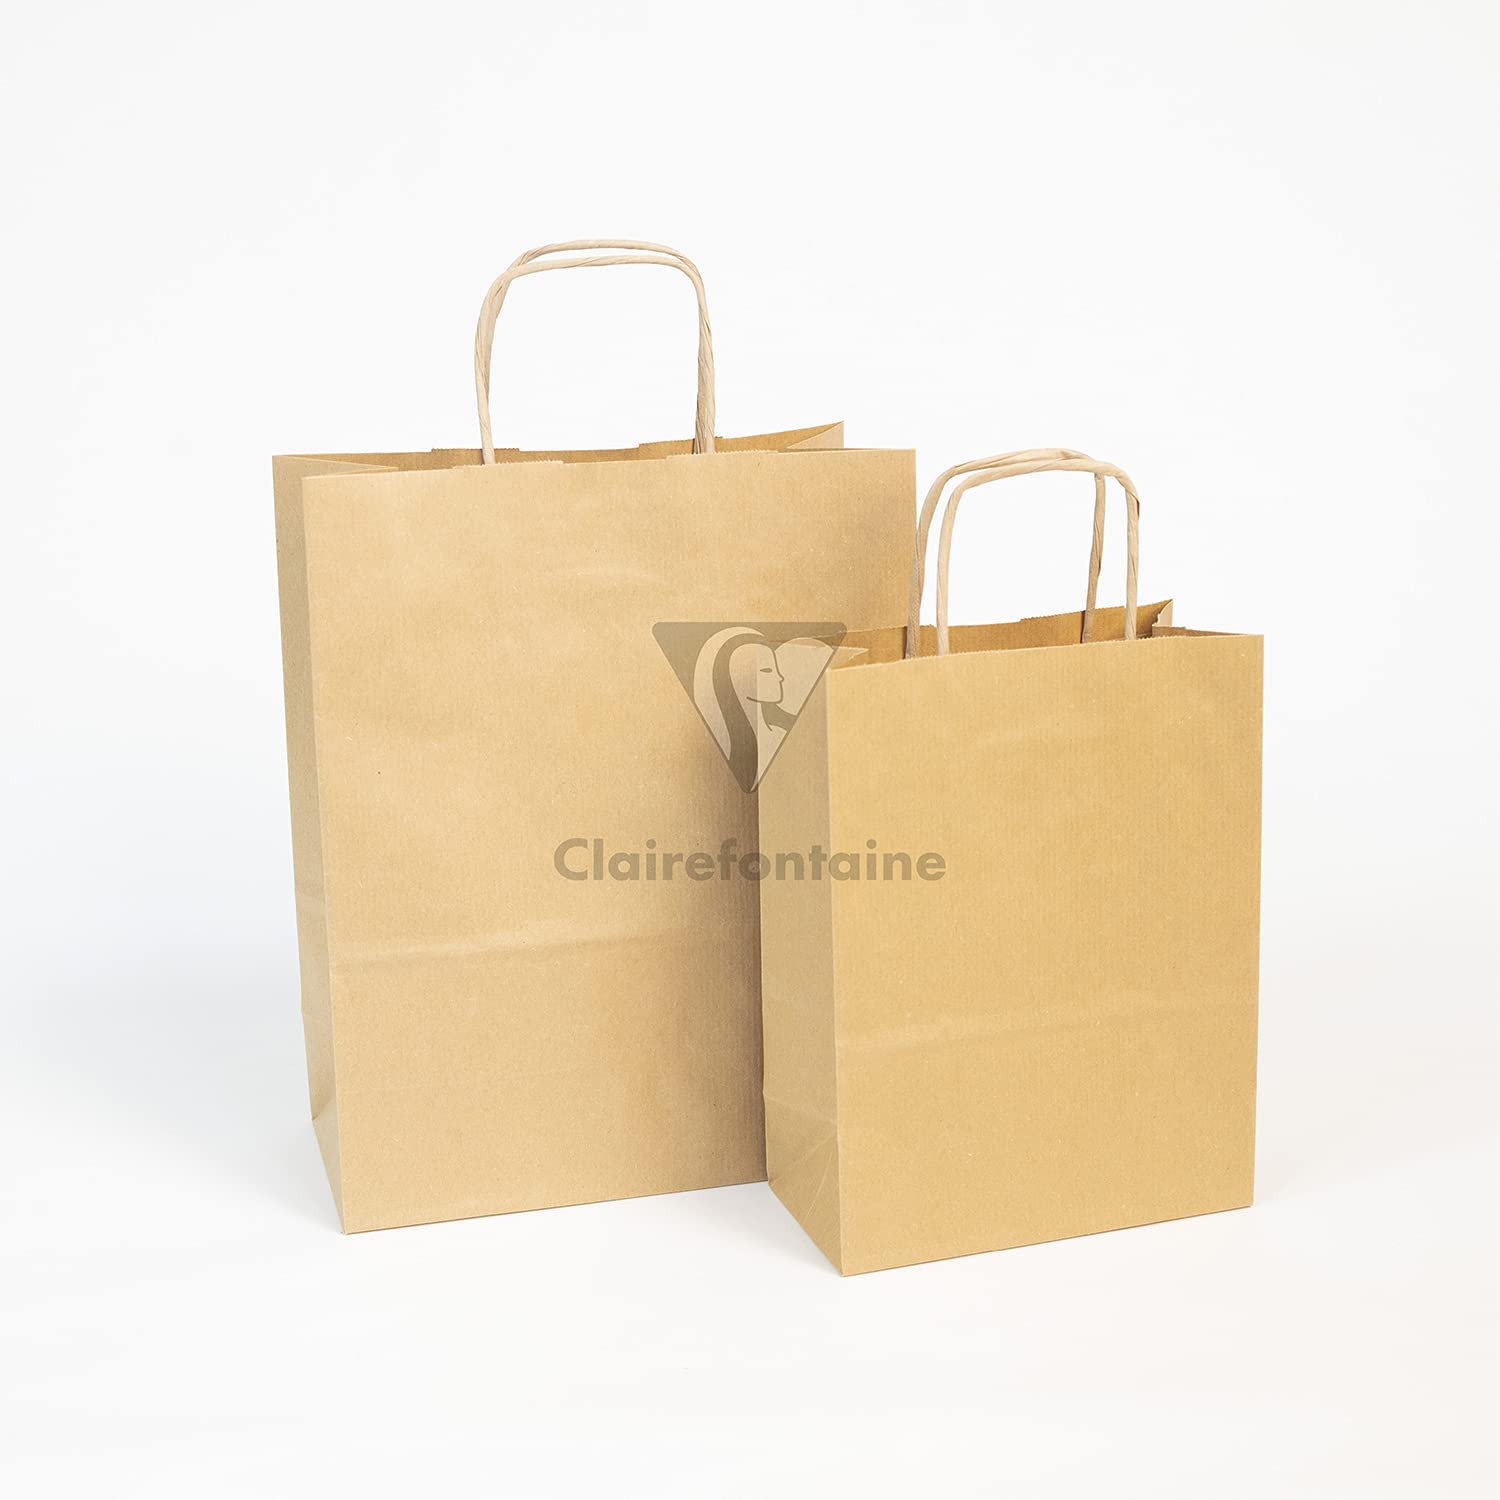 CLAIREFONTAINE Kraft Bags Brown 18x7x24cm 1s Plain Default Title